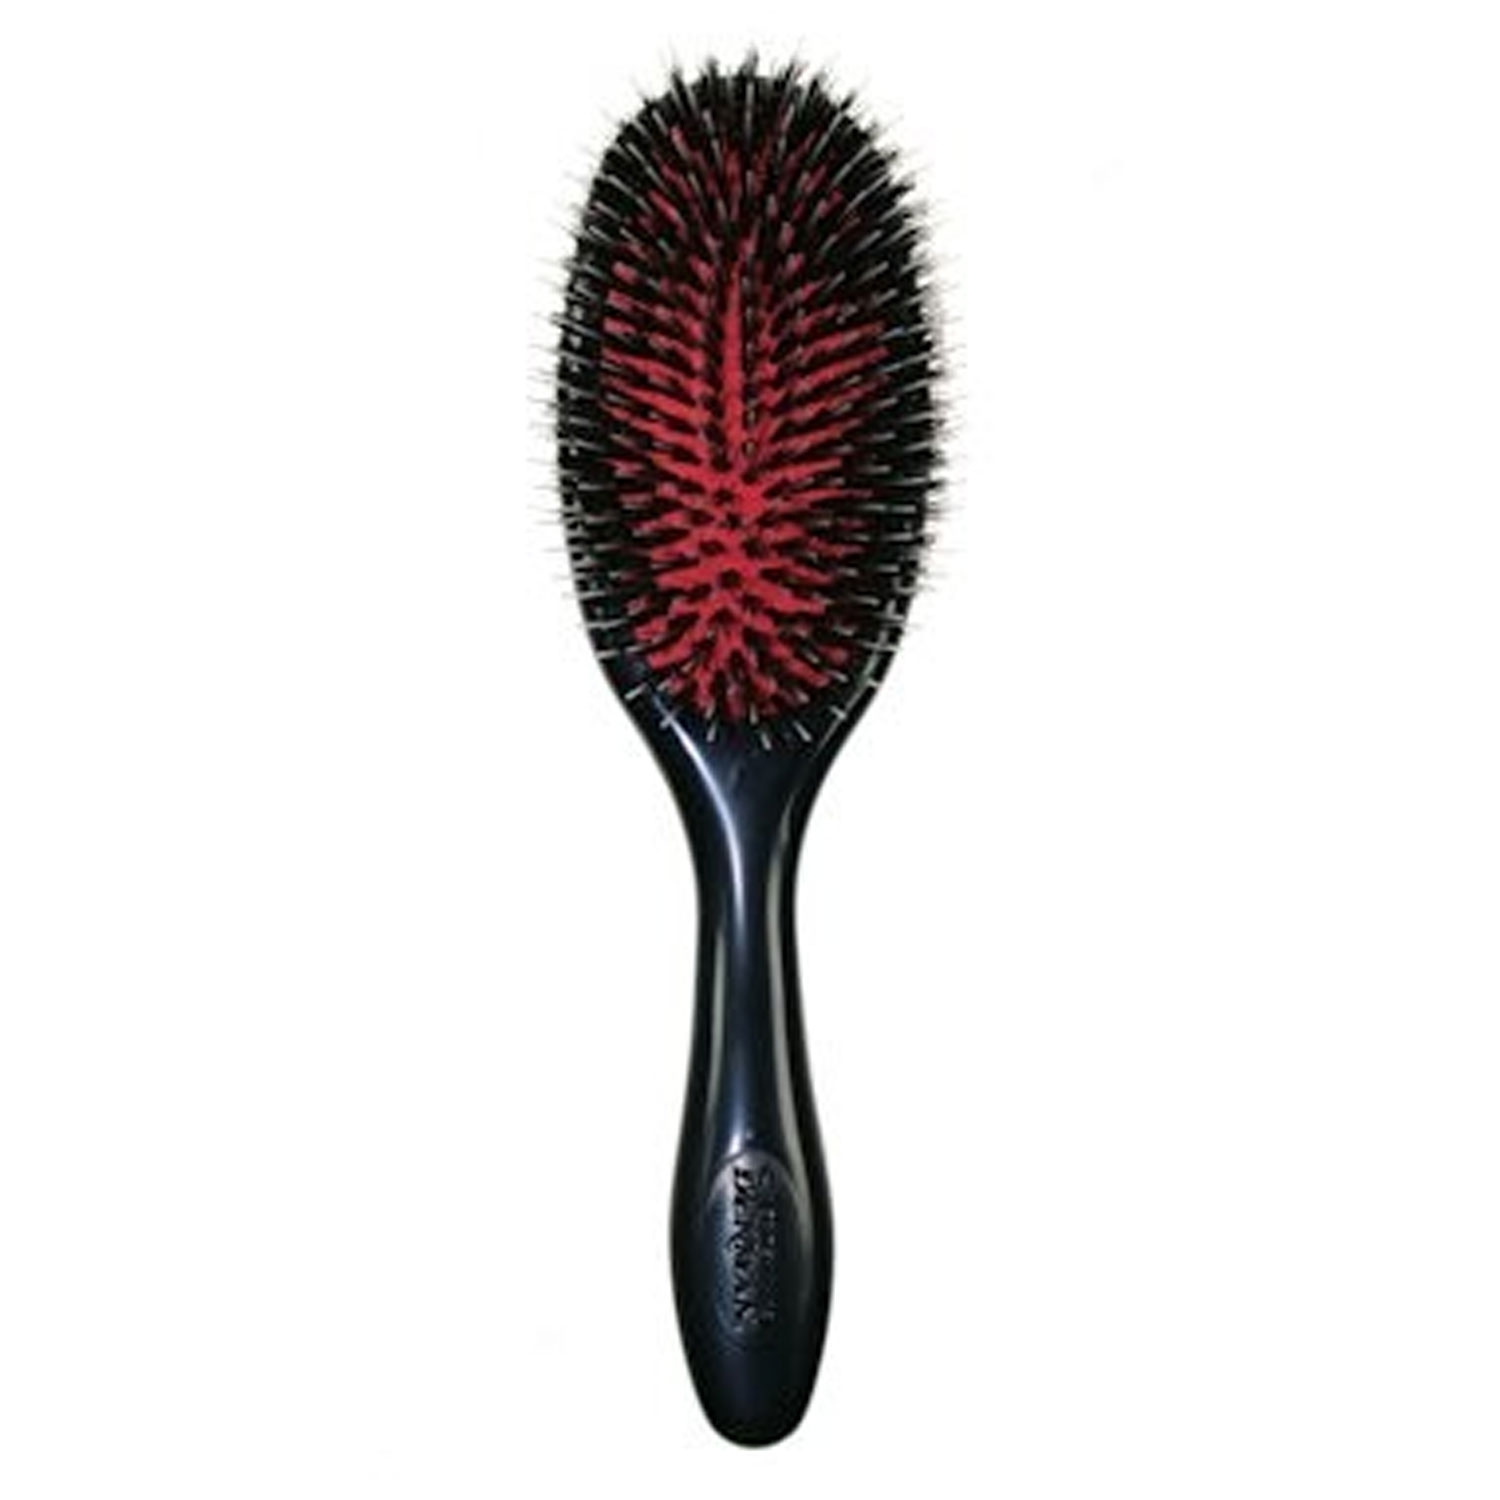 Produktbild von Denman - Grooming Brush Natural Bristle With Nylon D81M